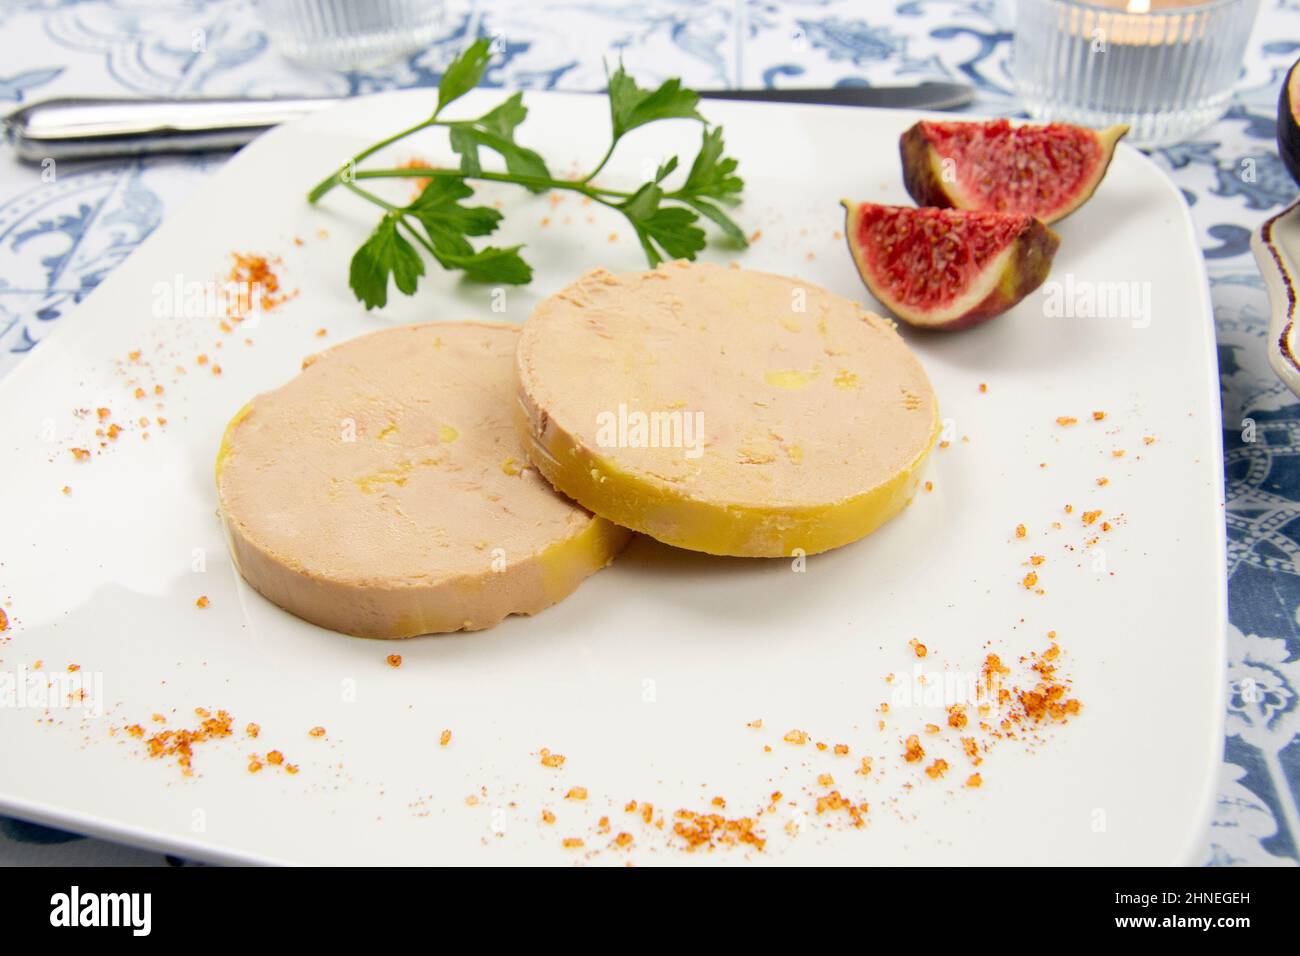 tranche de foie gras sur une assiette avec des figues fraîches Photo Stock  - Alamy